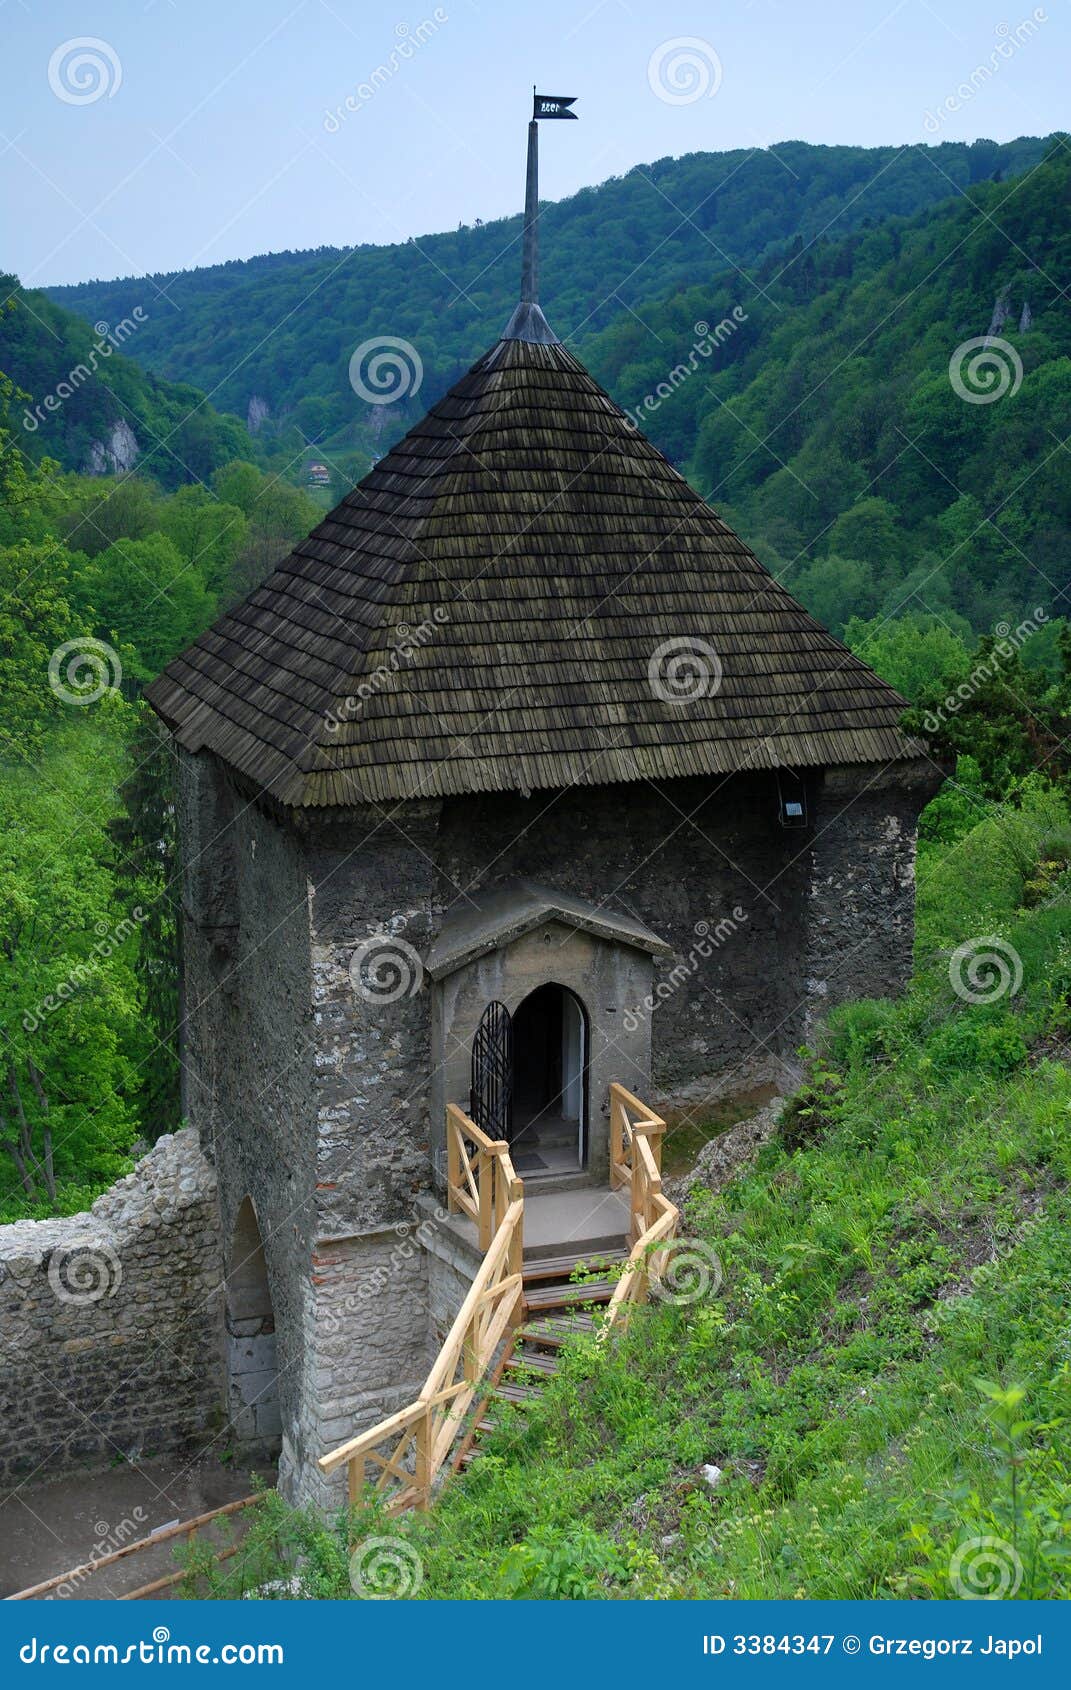 castle of ojcow